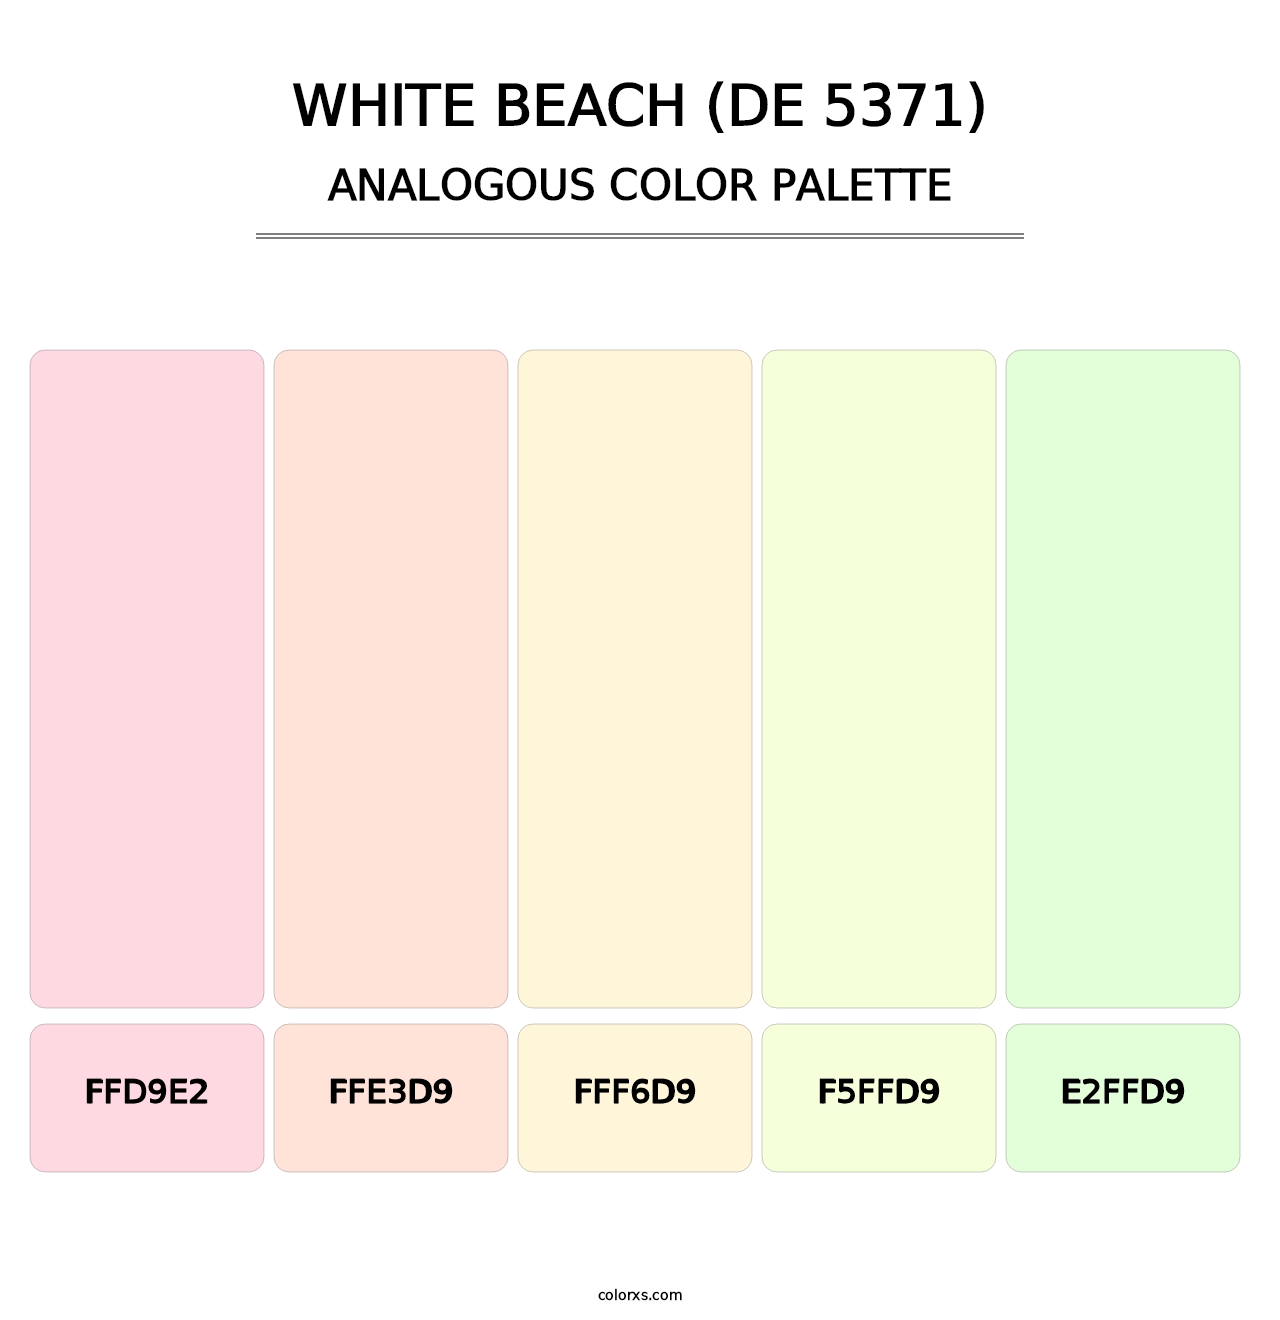 White Beach (DE 5371) - Analogous Color Palette